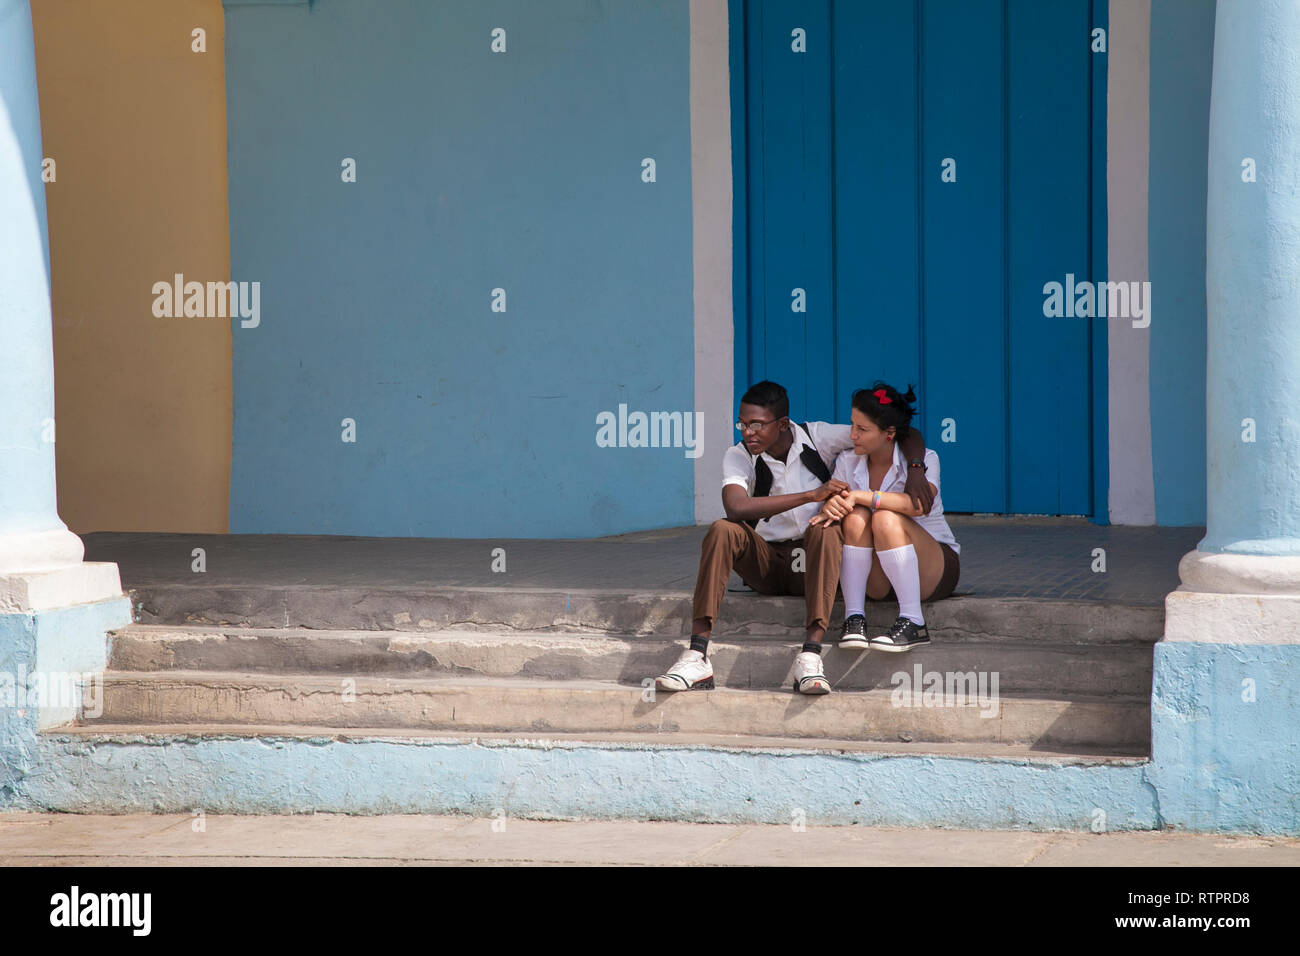 L'Avana, Cuba - 22 Gennaio 2013: una vista delle strade della città con il popolo cubano. Una giovane coppia abbracci seduta sulle scale. Foto Stock